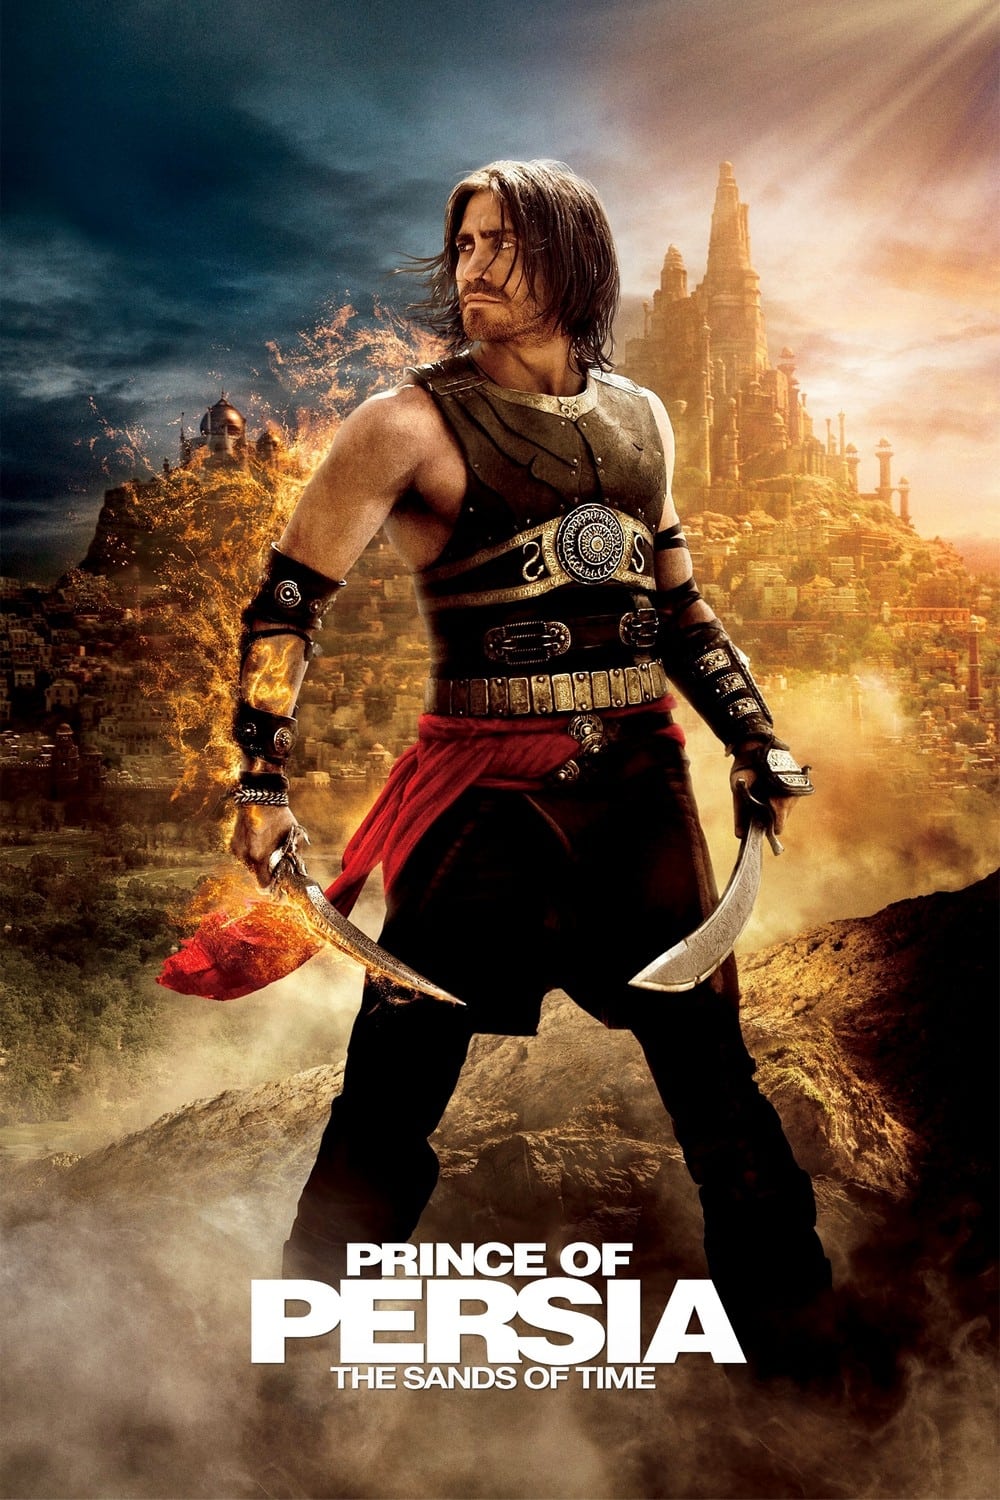 Prince of Persia - Der Sand der Zeit (2010)